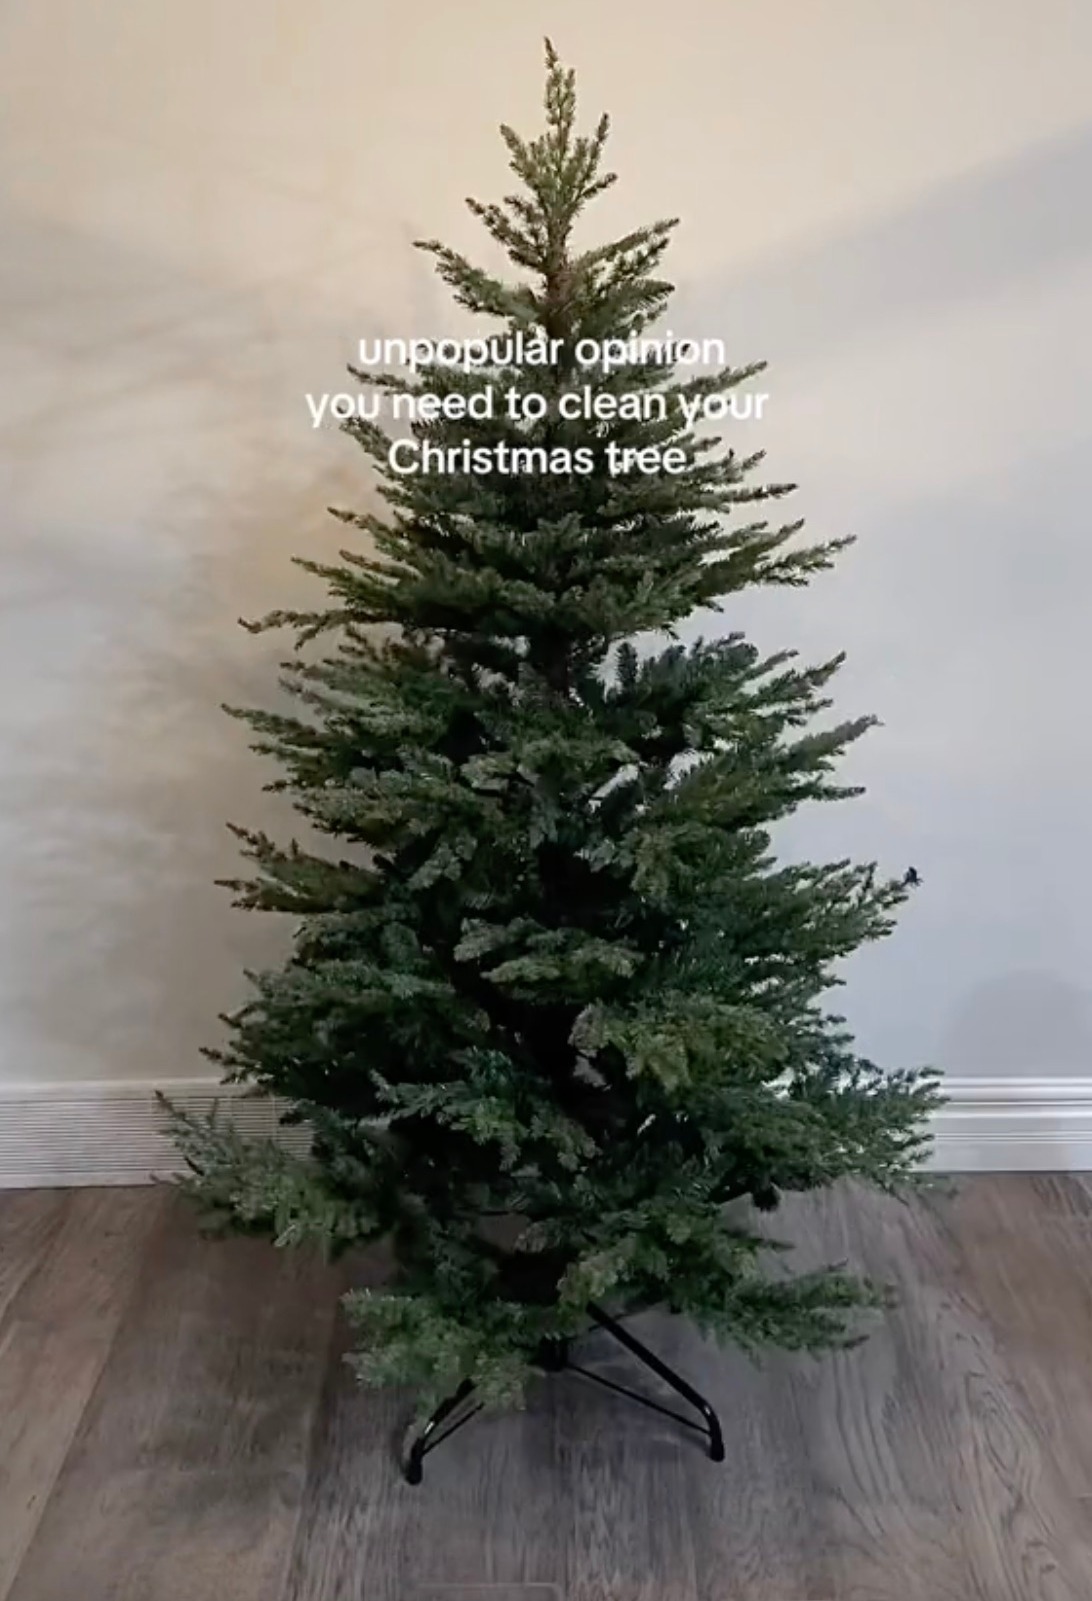 Sie zeigte ihren zusammengebauten Weihnachtsbaum in ihrem Zimmer, nachdem sie mit dem Putzen fertig war